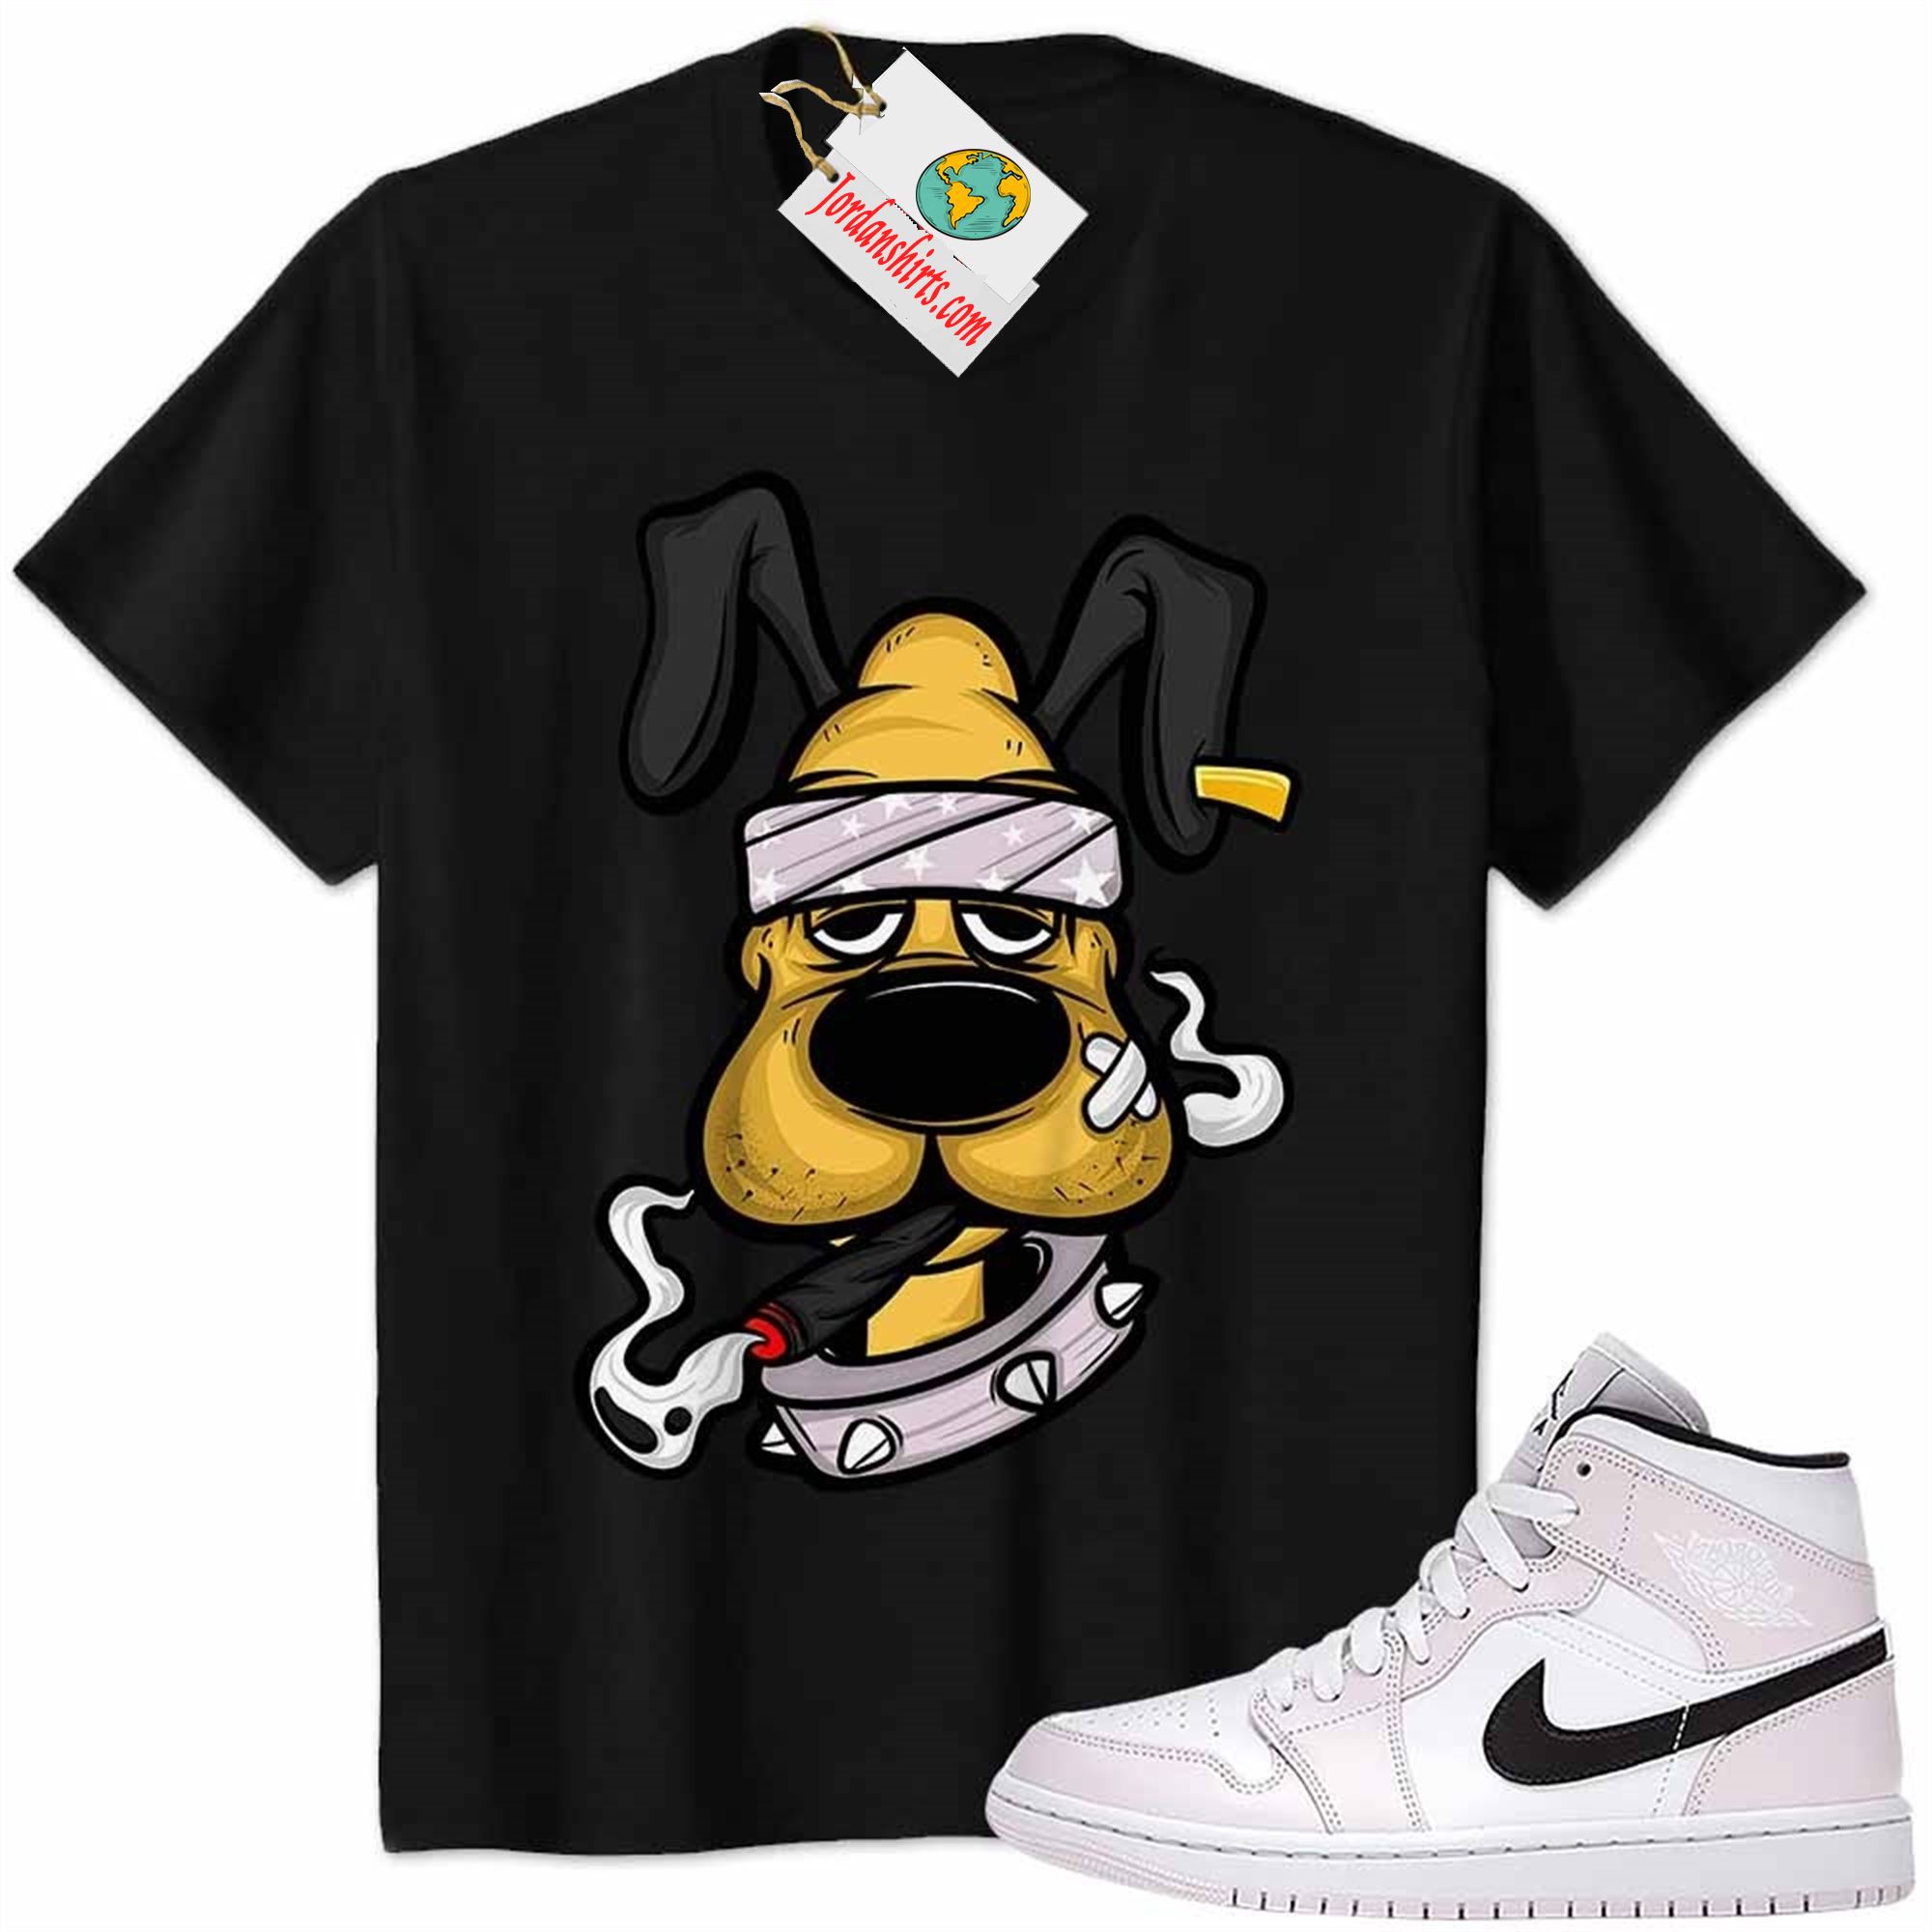 Jordan 1 Shirt, Gangster Pluto Smoke Weed Black Air Jordan 1 Barely Rose 1s Plus Size Up To 5xl